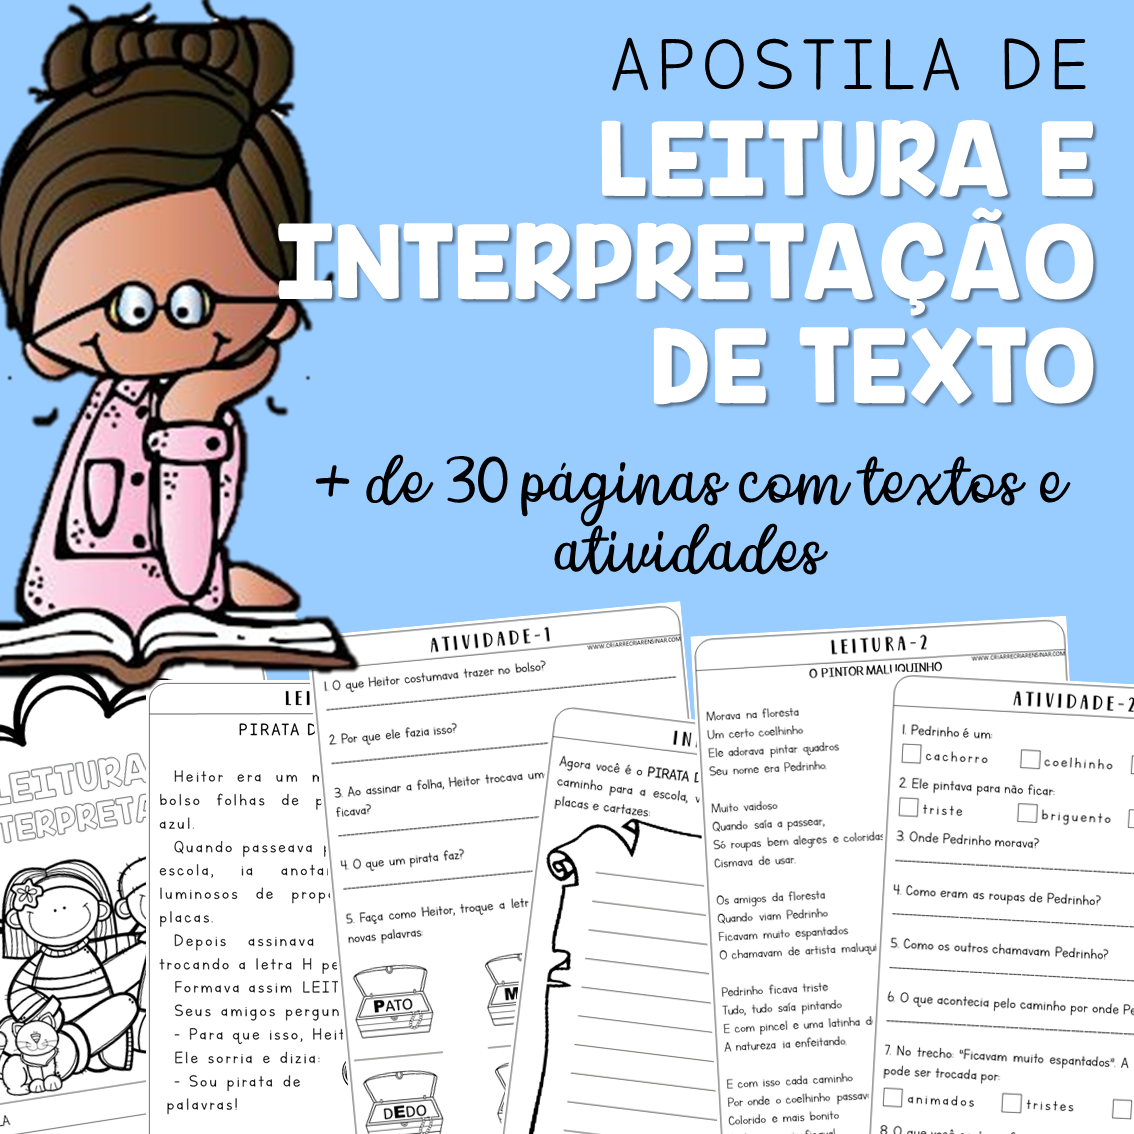 APOSTILA DE LEITURA E INTERPRETAÇÃO DE TEXTO